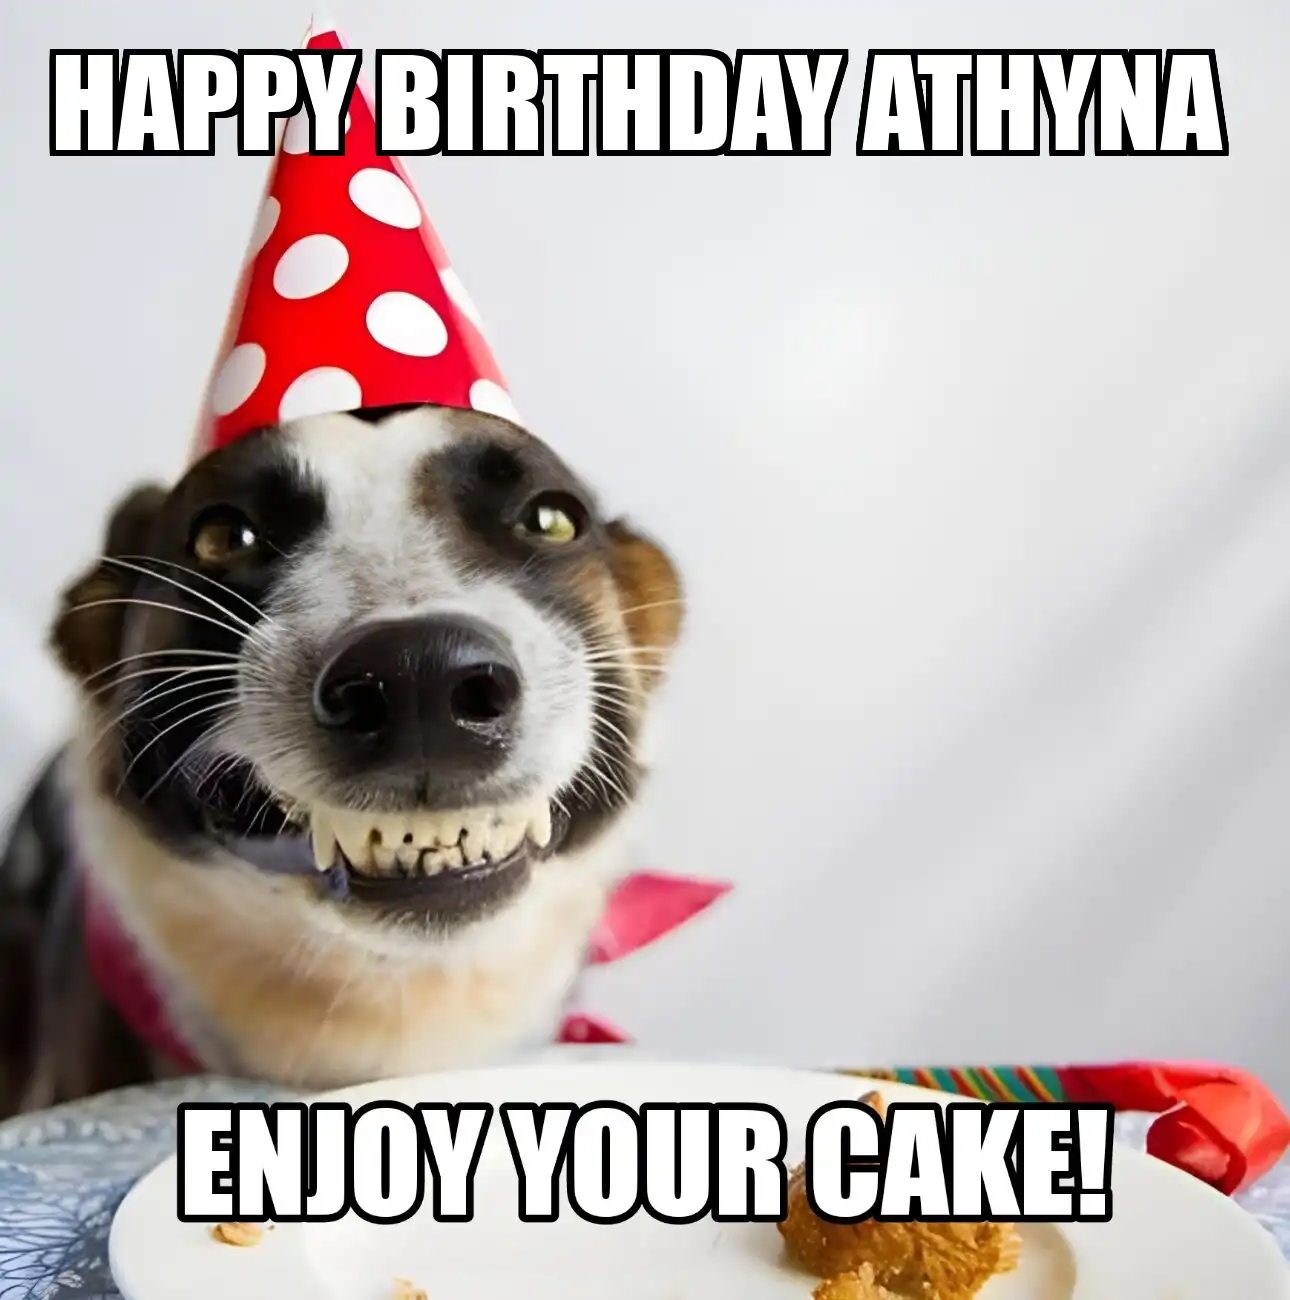 Happy Birthday Athyna Enjoy Your Cake Dog Meme